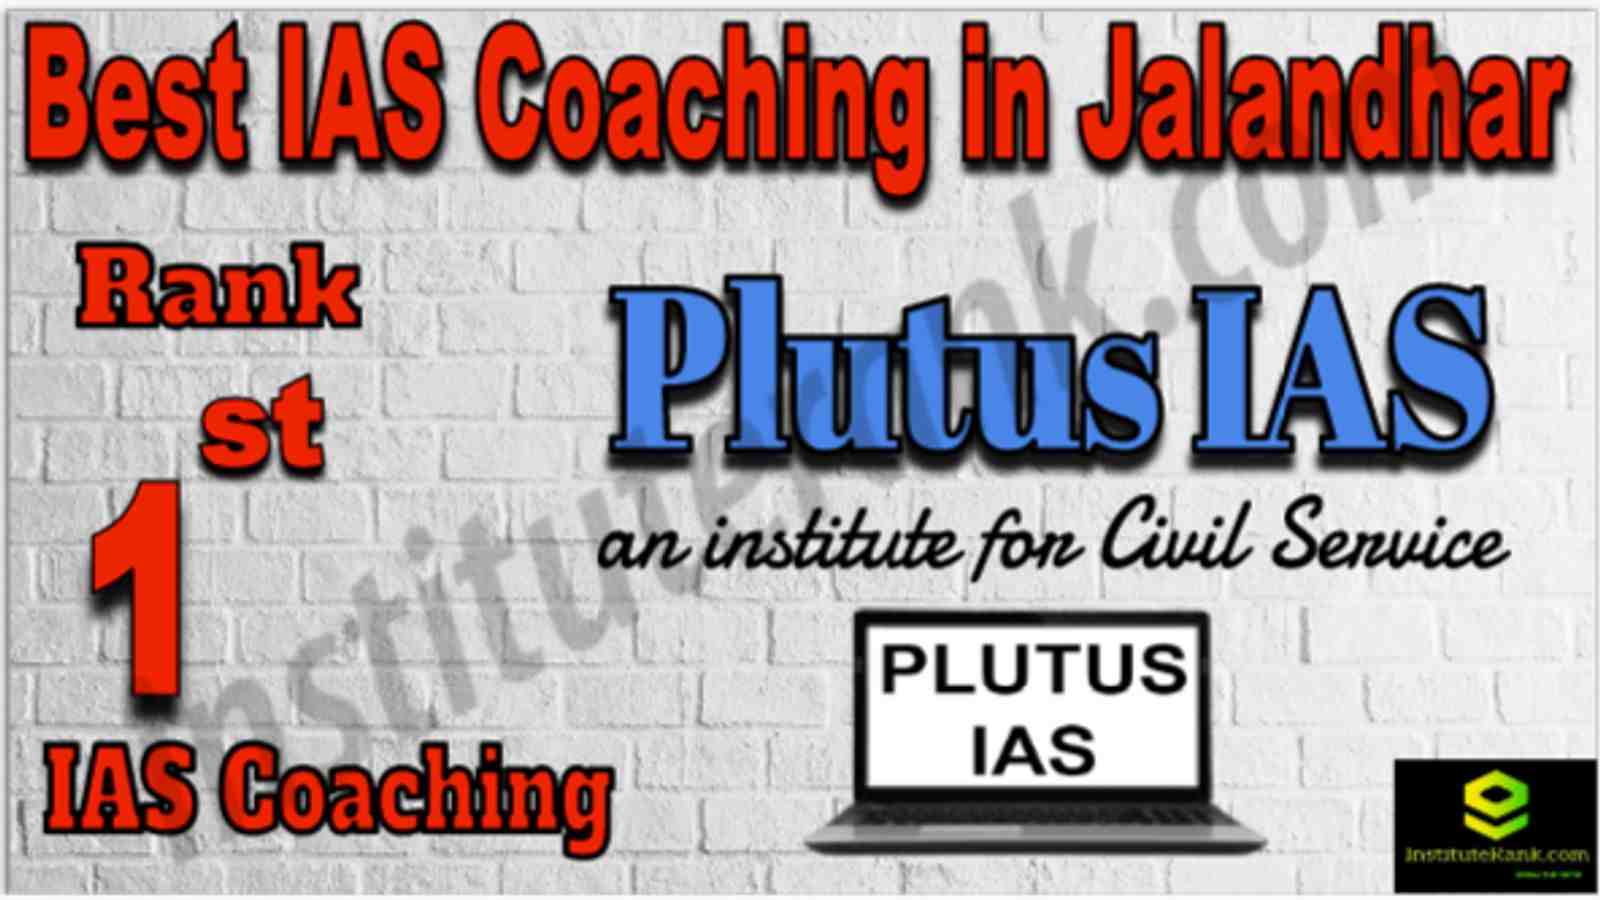 Rank 1 Best IAS Coaching in Jalandhar